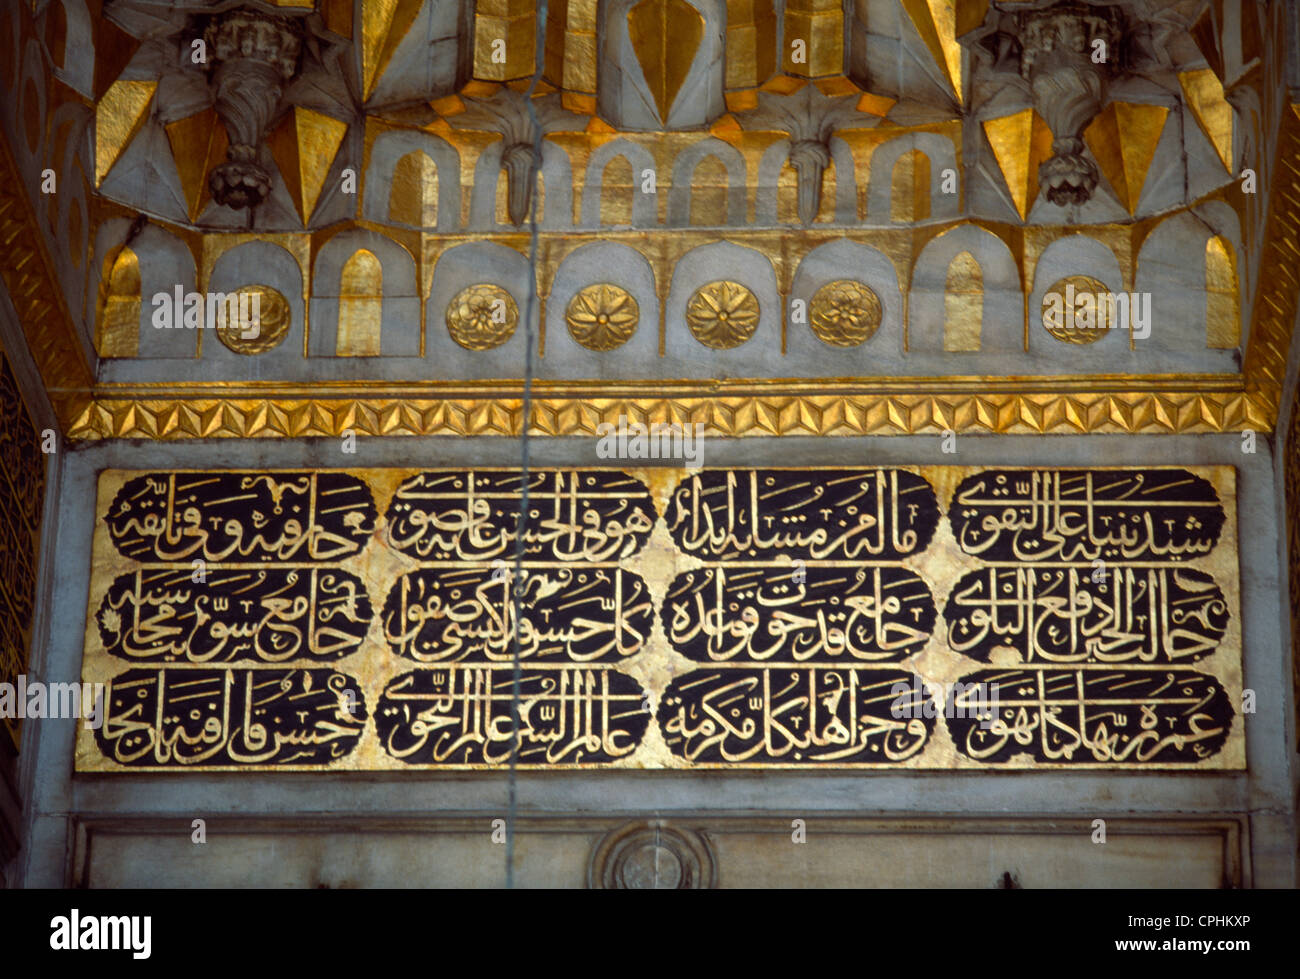 Estambul TURQUÍA Yeni Cami (Mezquita nueva) Caligrafía islámica Foto de stock